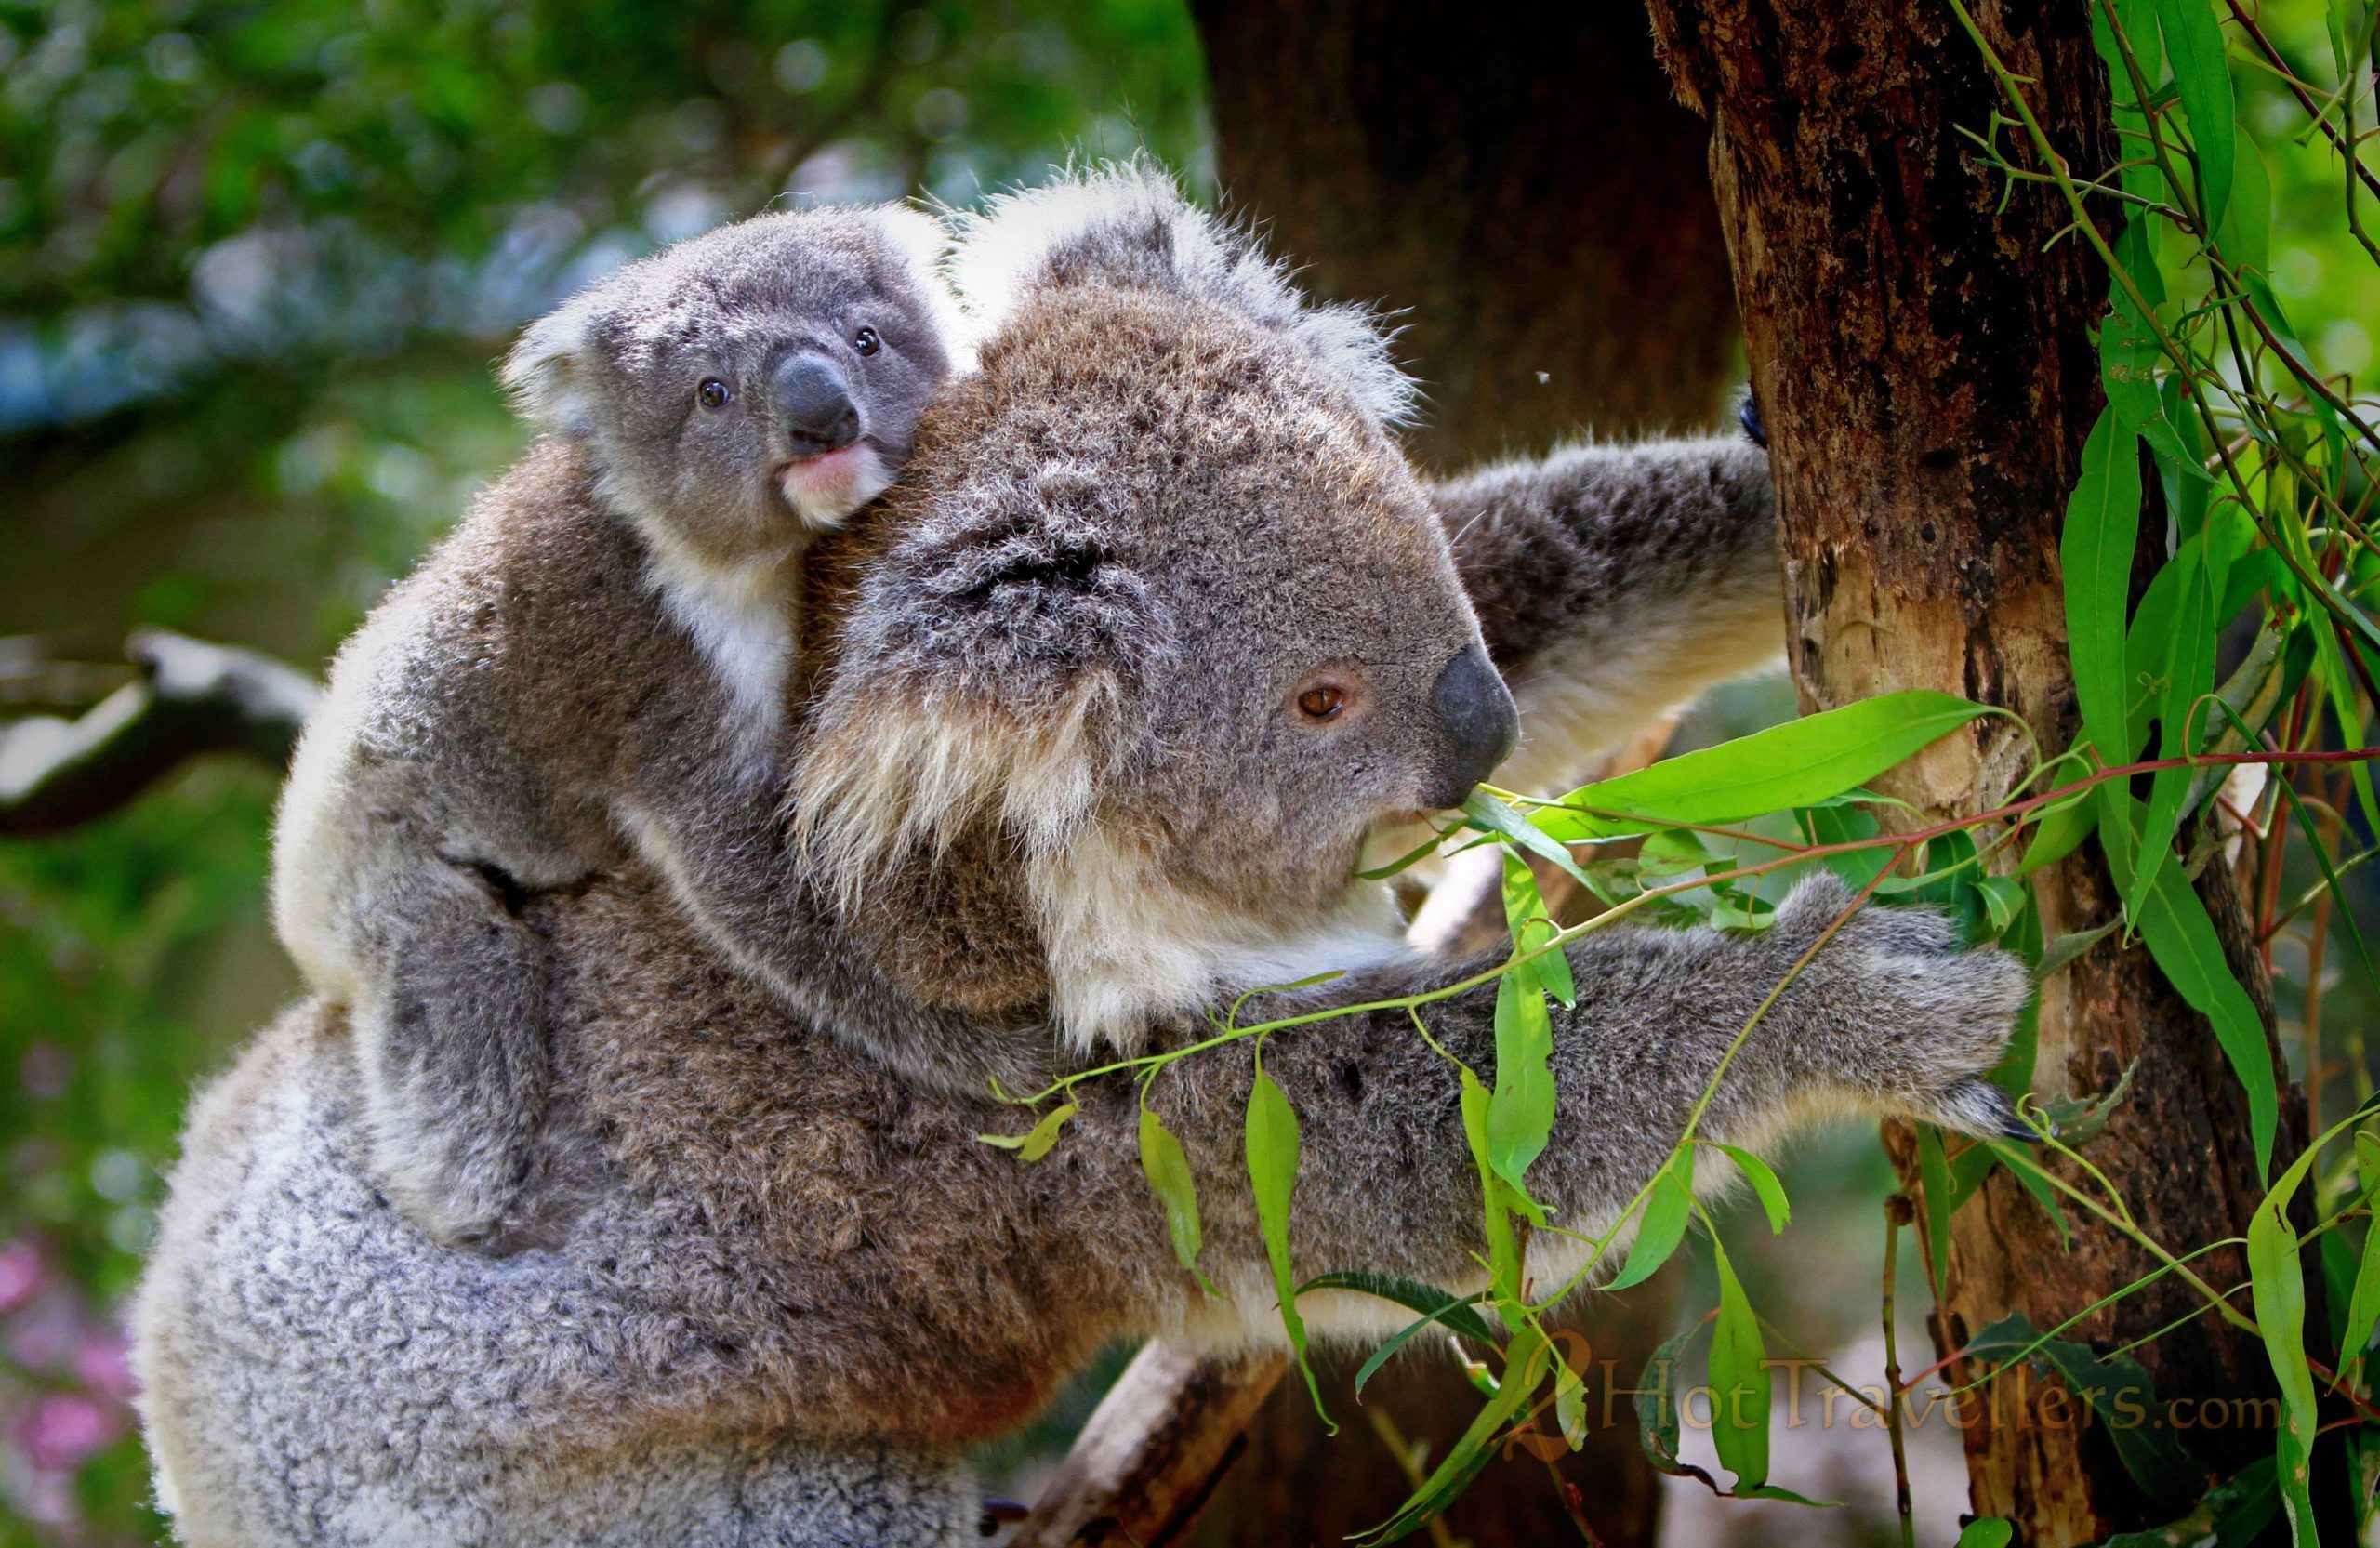 Koala's climbing the tree